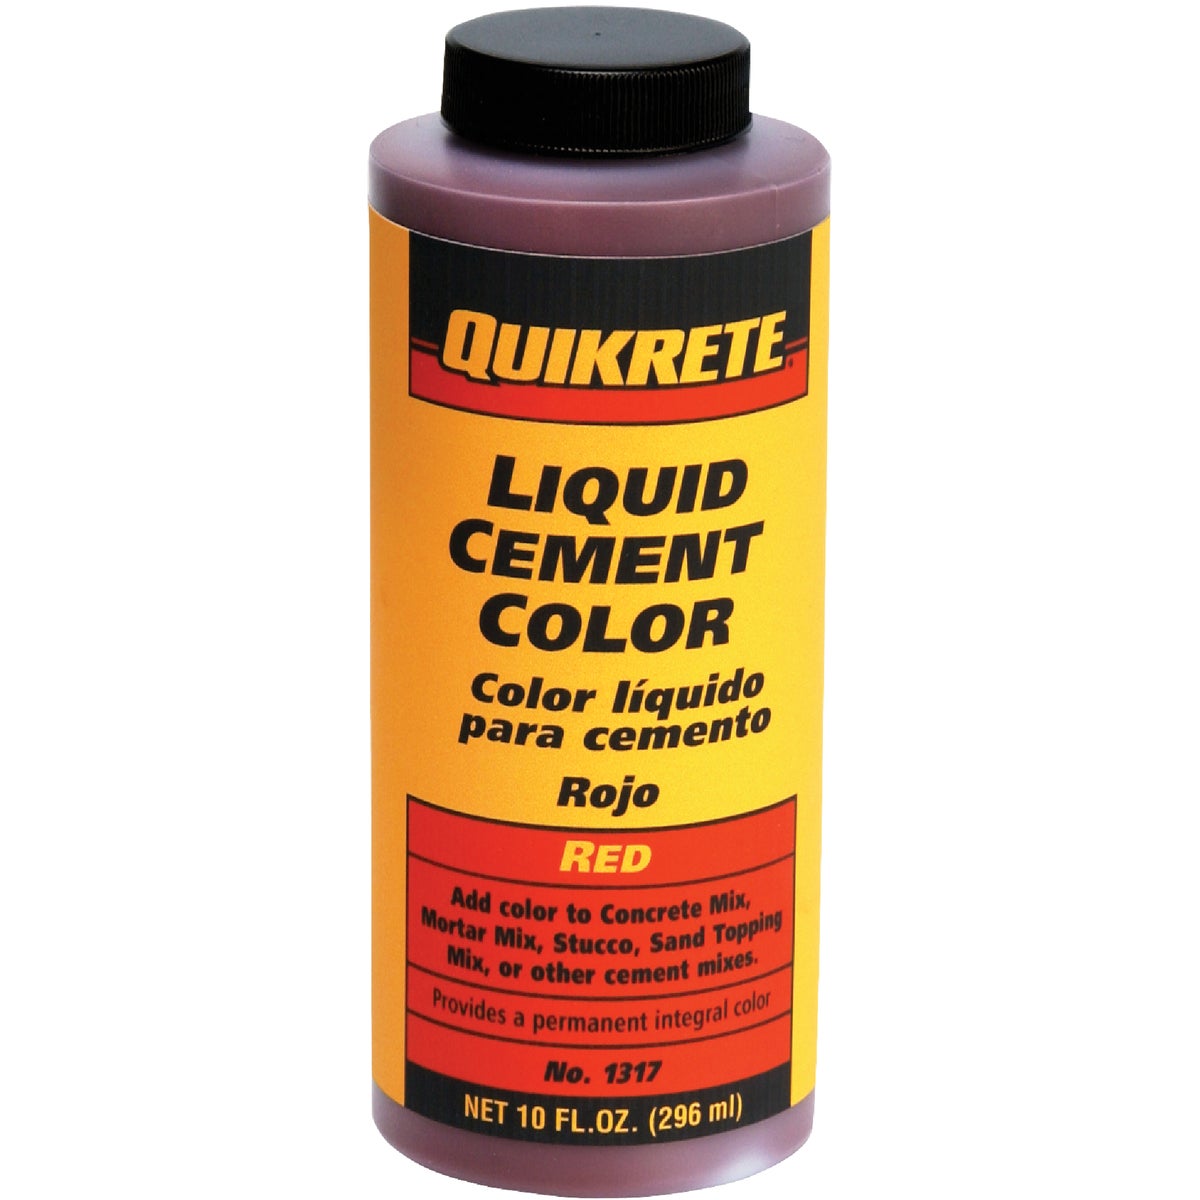 Quikrete 13173 Liquid Cement Color, Red, NET 10 FL. OZ.(296 mL)"